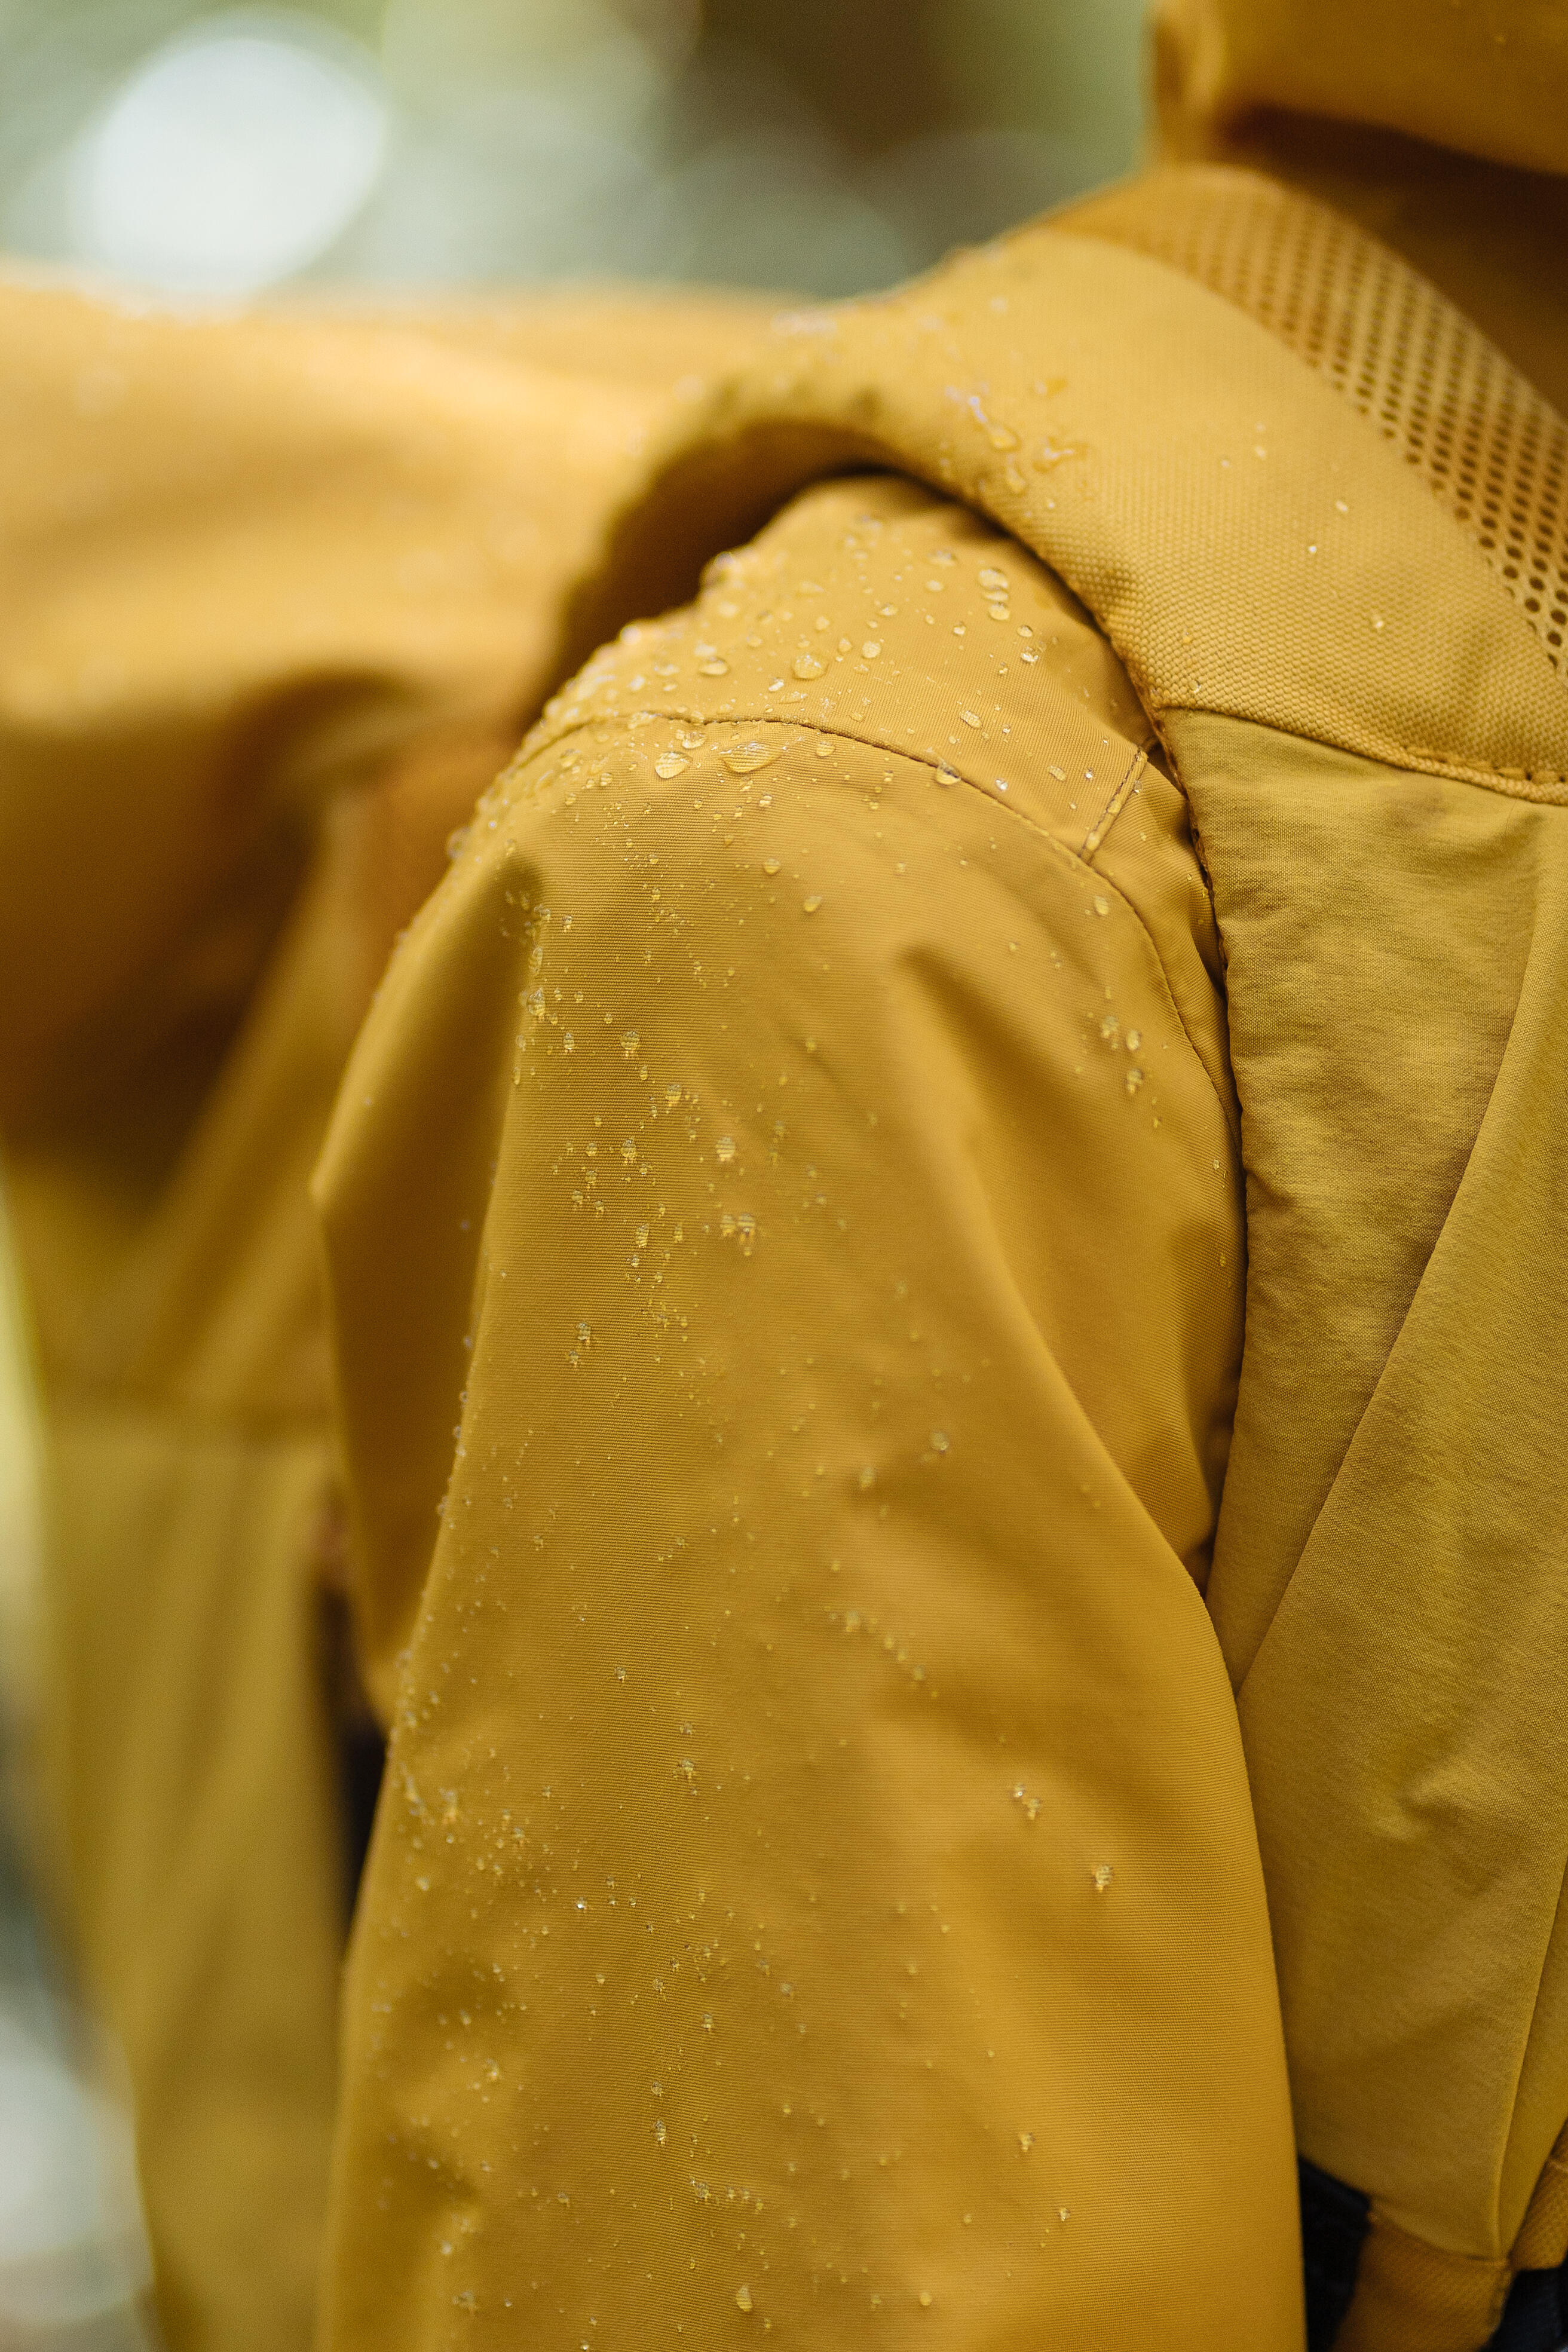 Women’s Waterproof Rain Jacket - NH 550 - QUECHUA